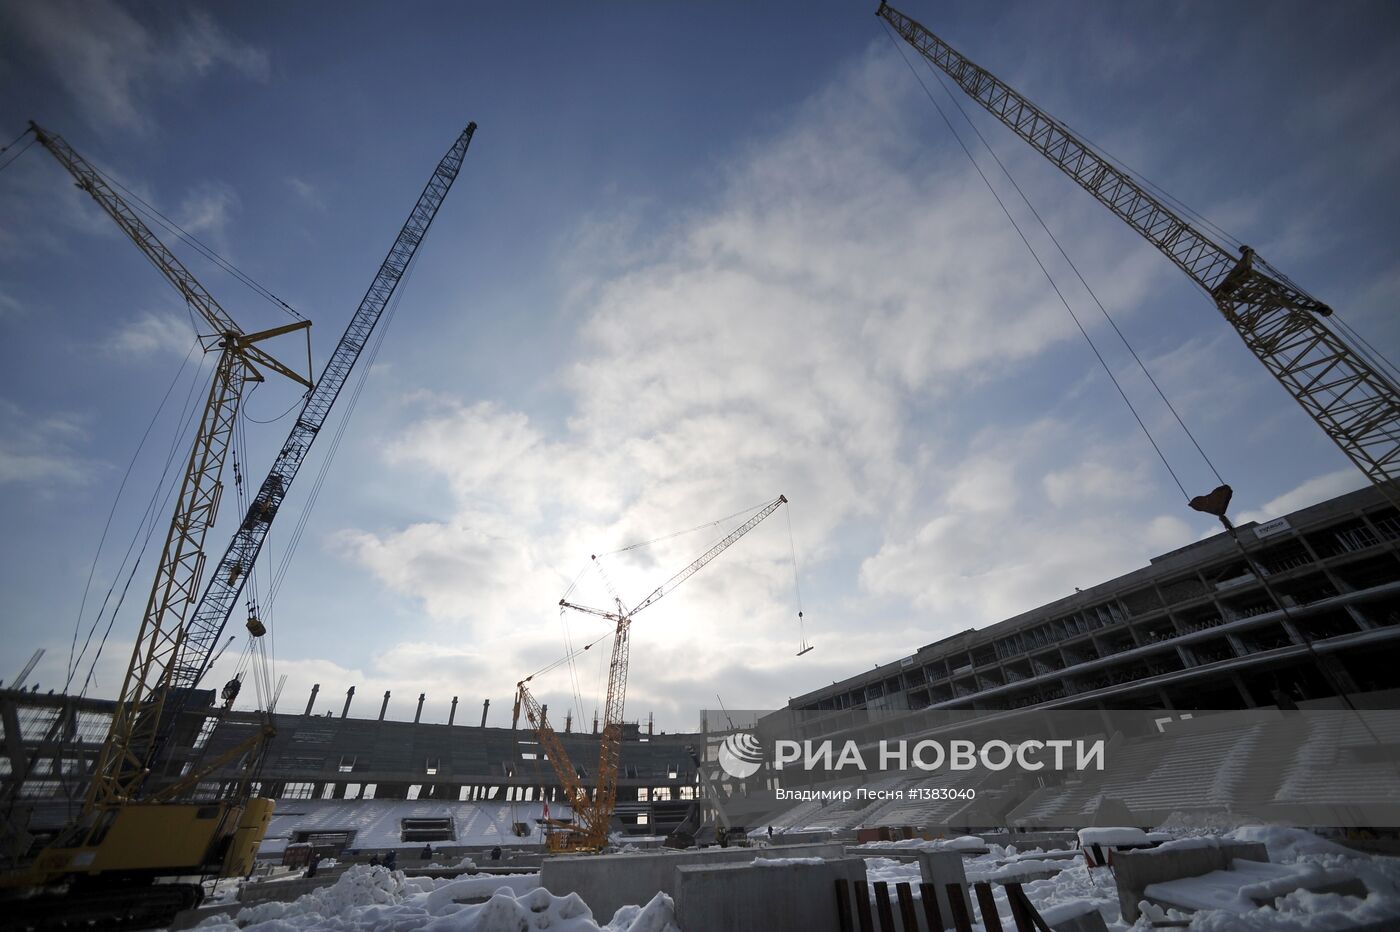 Новый стадион "Спартака" получит имя "Открытие-Арена"